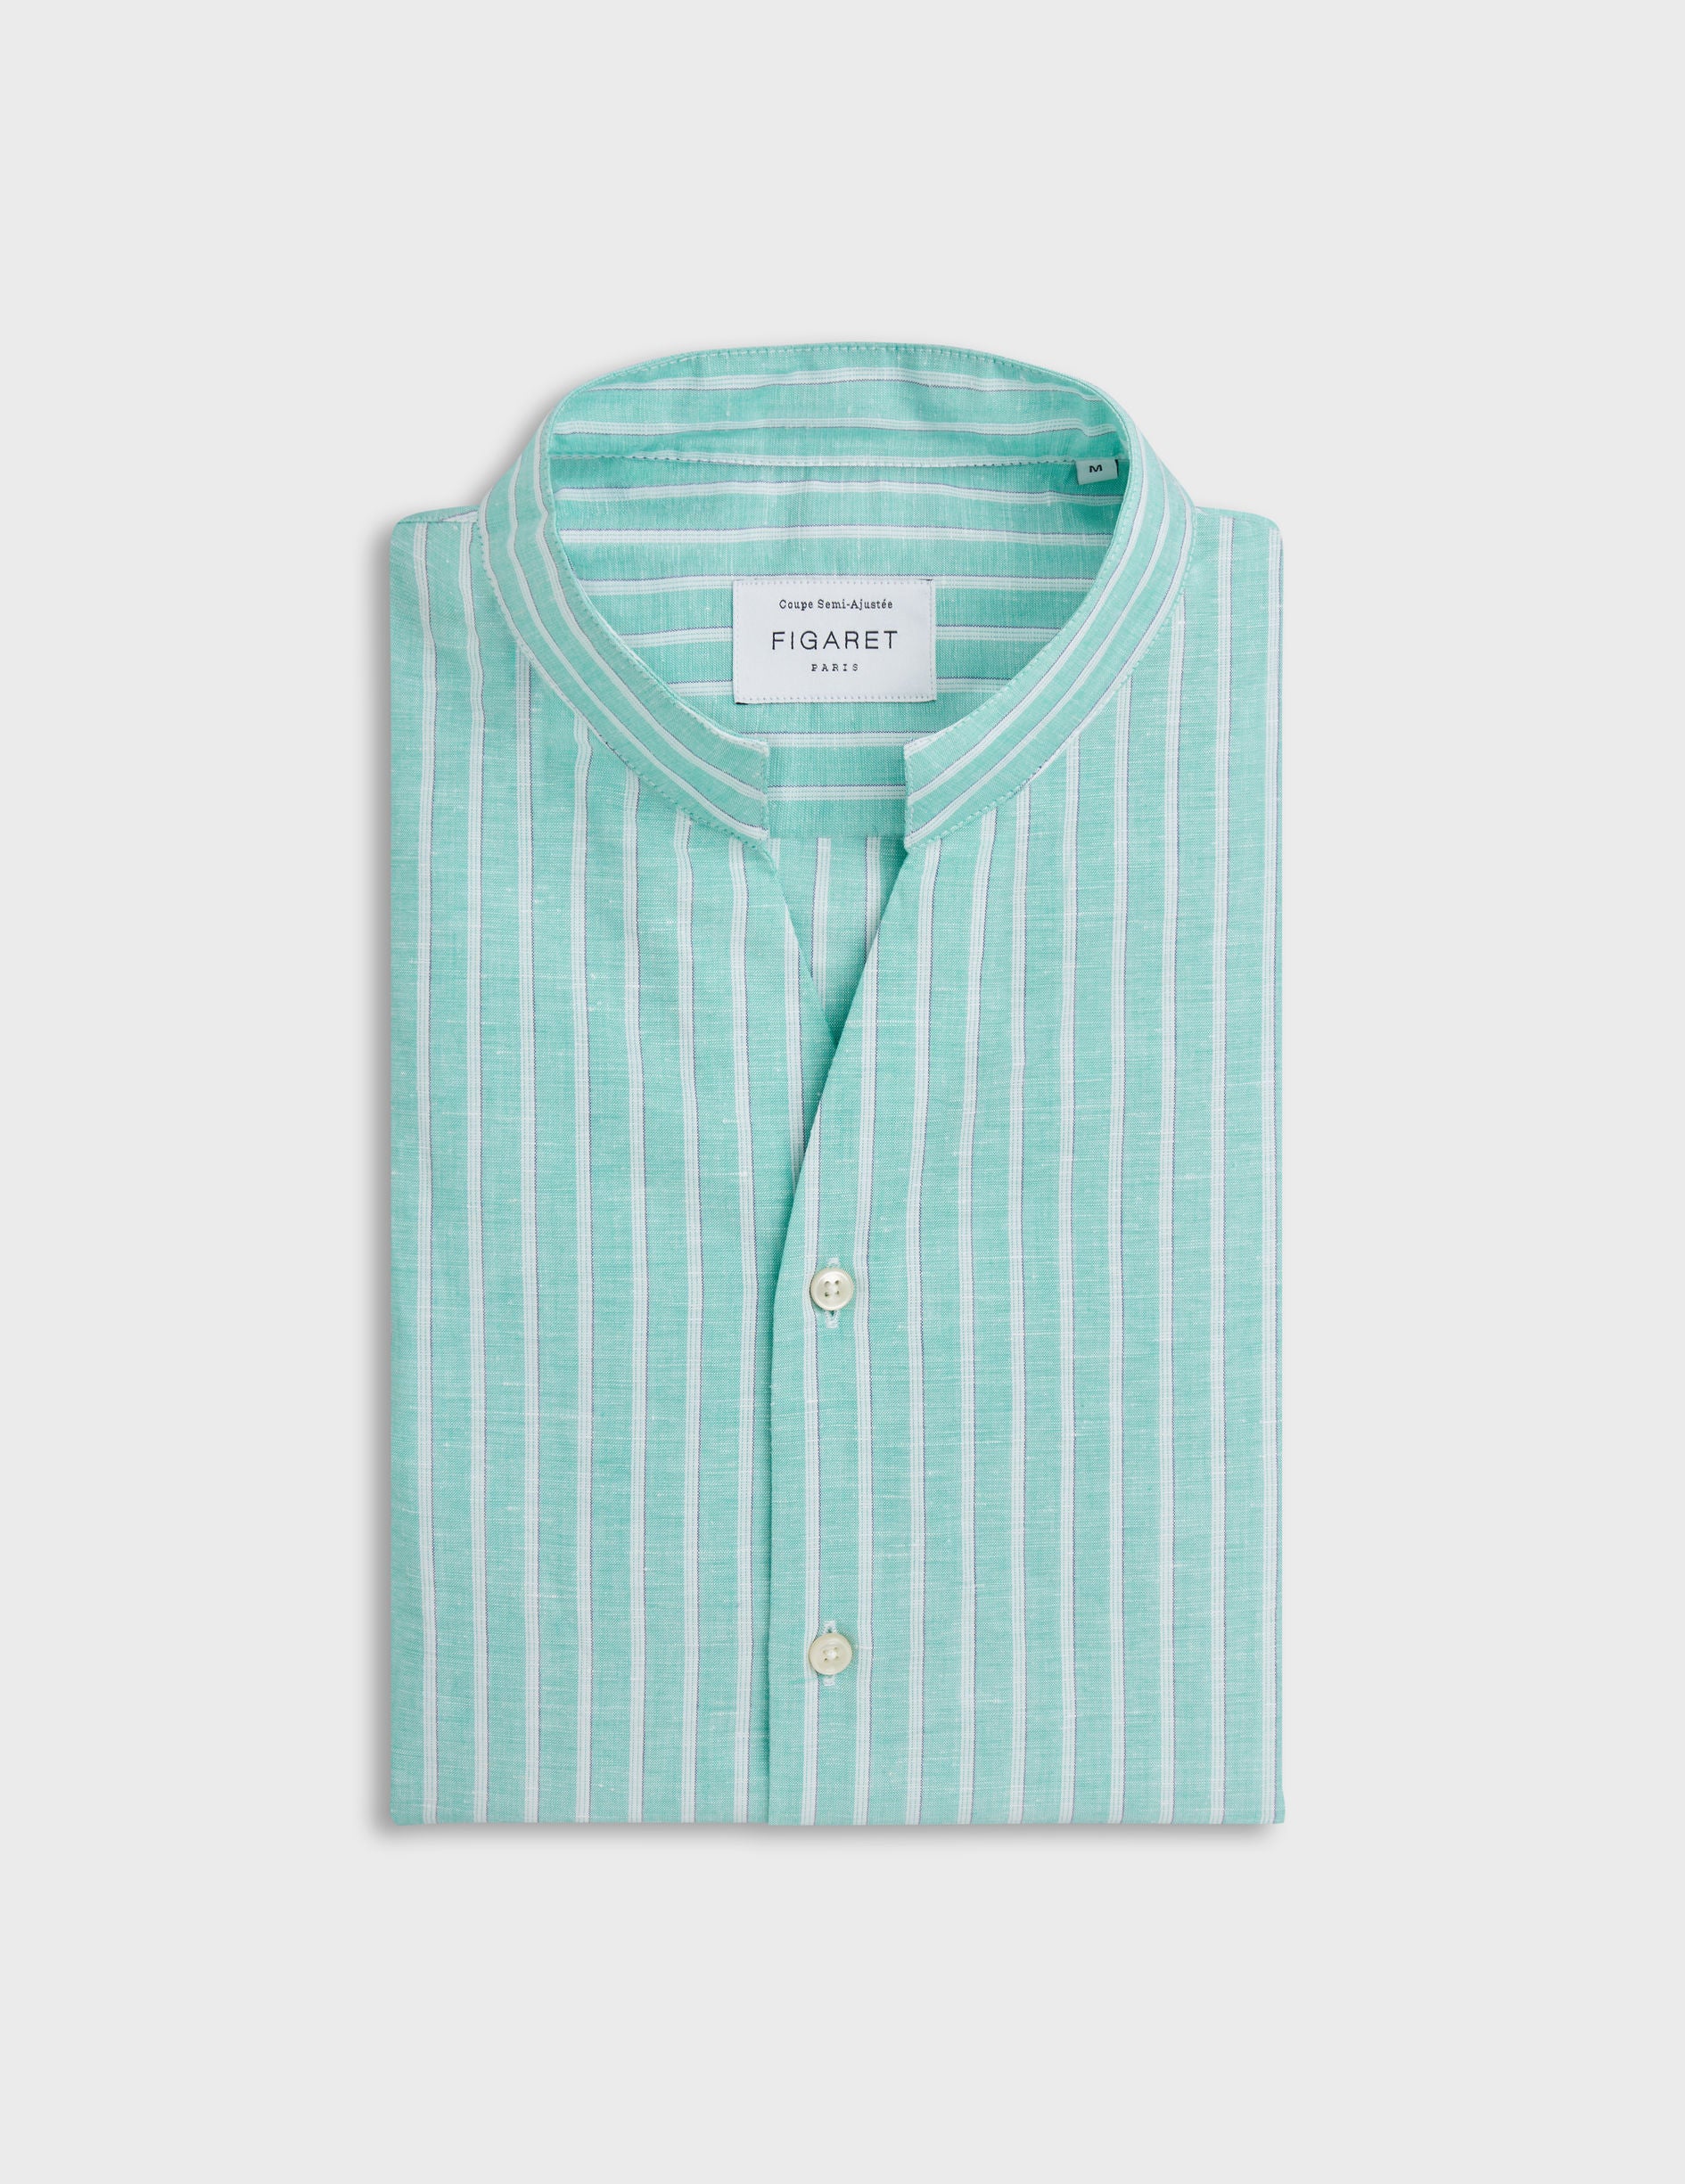 Carl striped shirt in light green linen - Linen - Open straight Collar